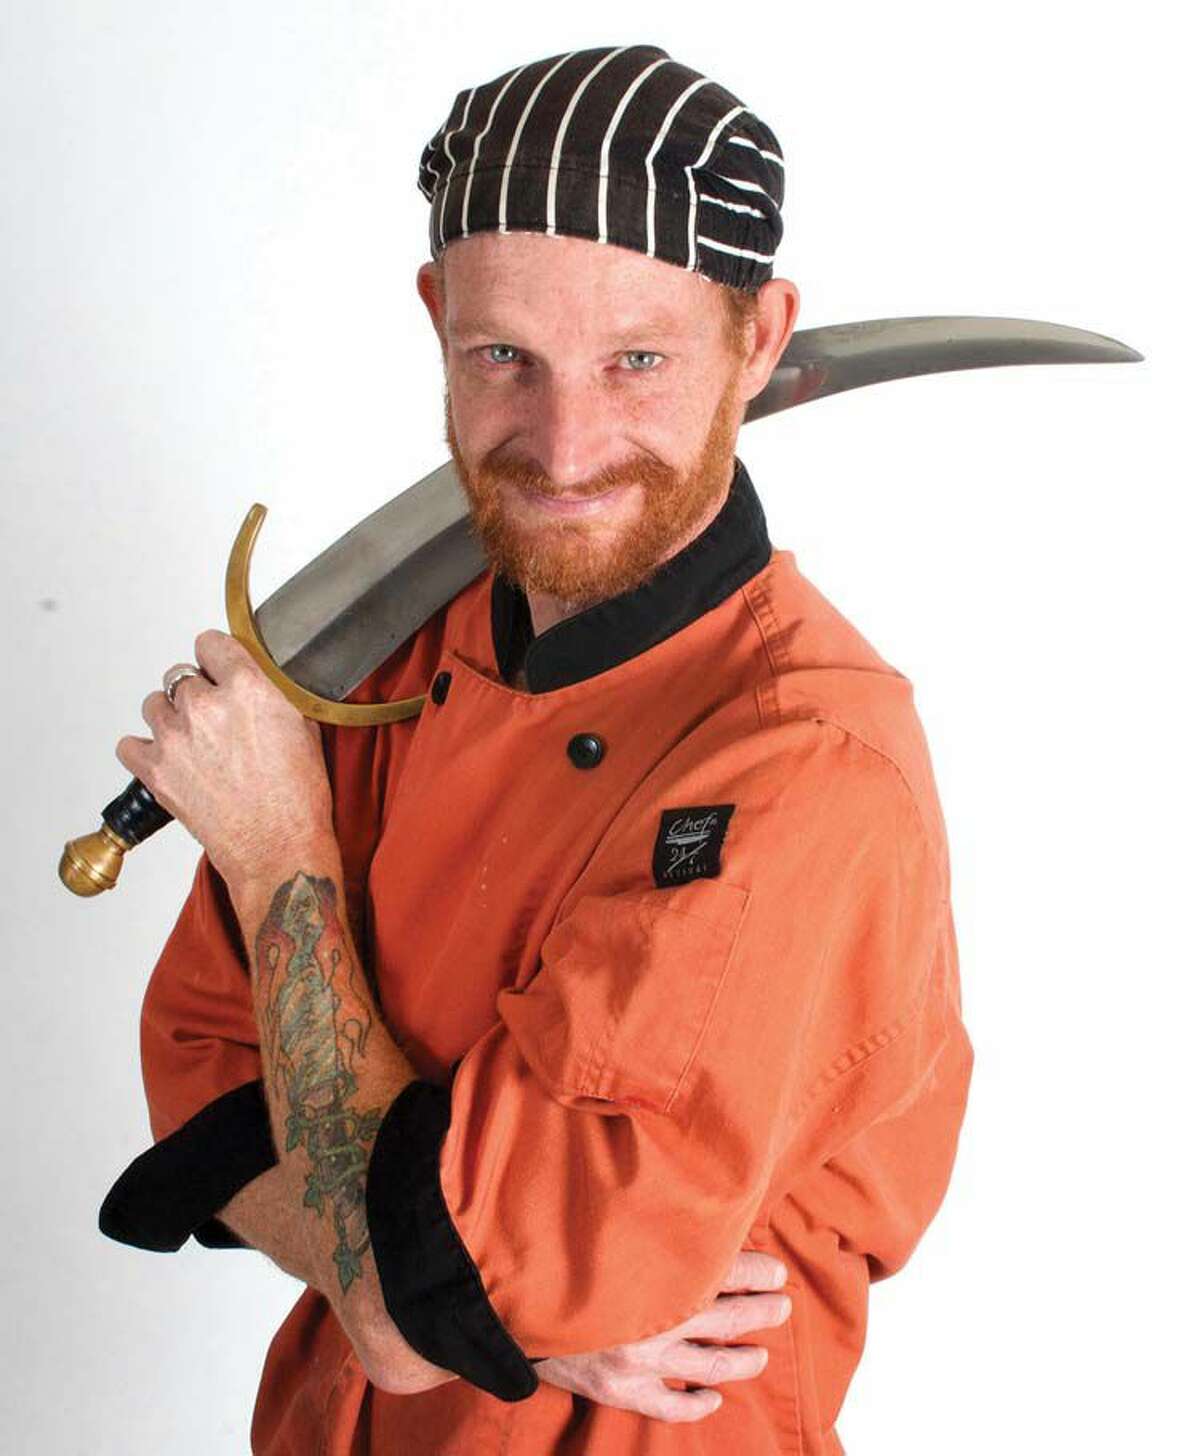 Kurt “Irish Chef” Ramborger